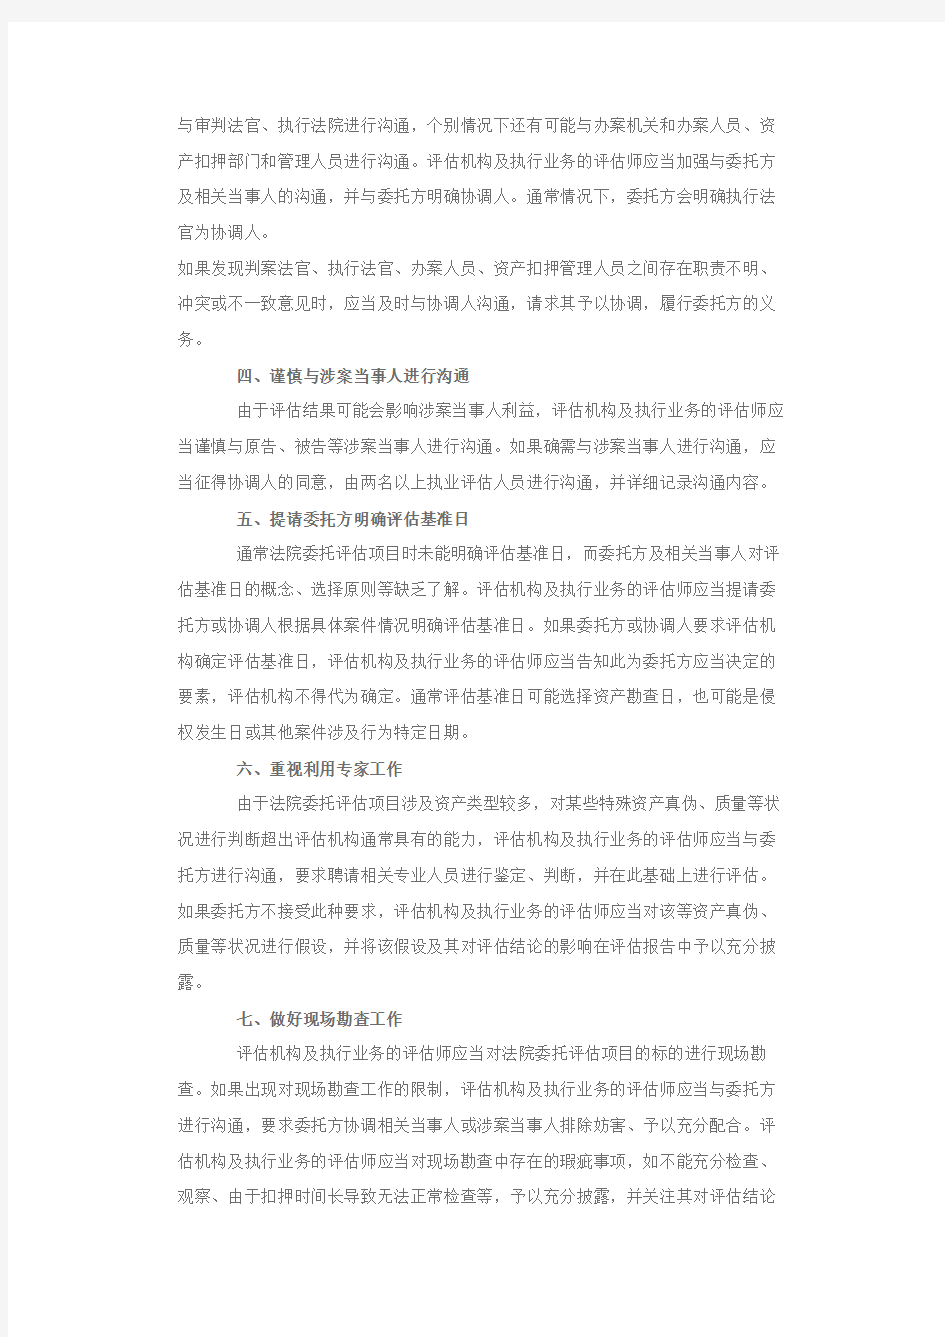 北京资产评估协会中小评估机构技术援助专家委员会专家提示第1号